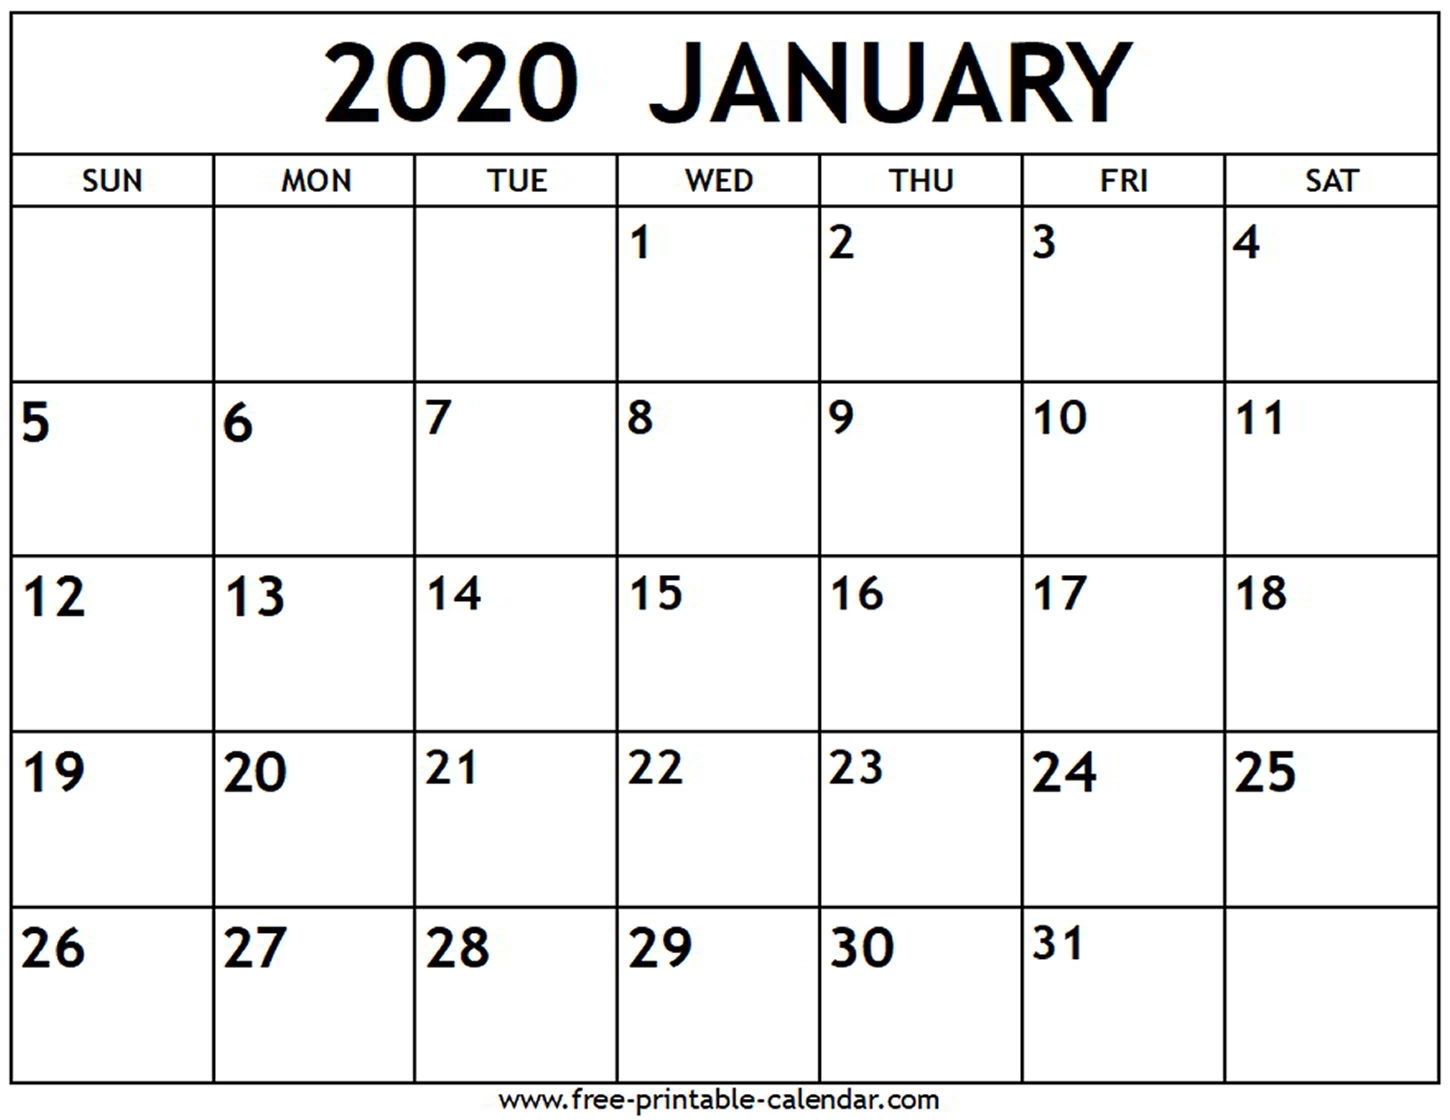 January 2020 Calendar - Free-Printable-Calendar Exceptional Printable Calendar For 2020